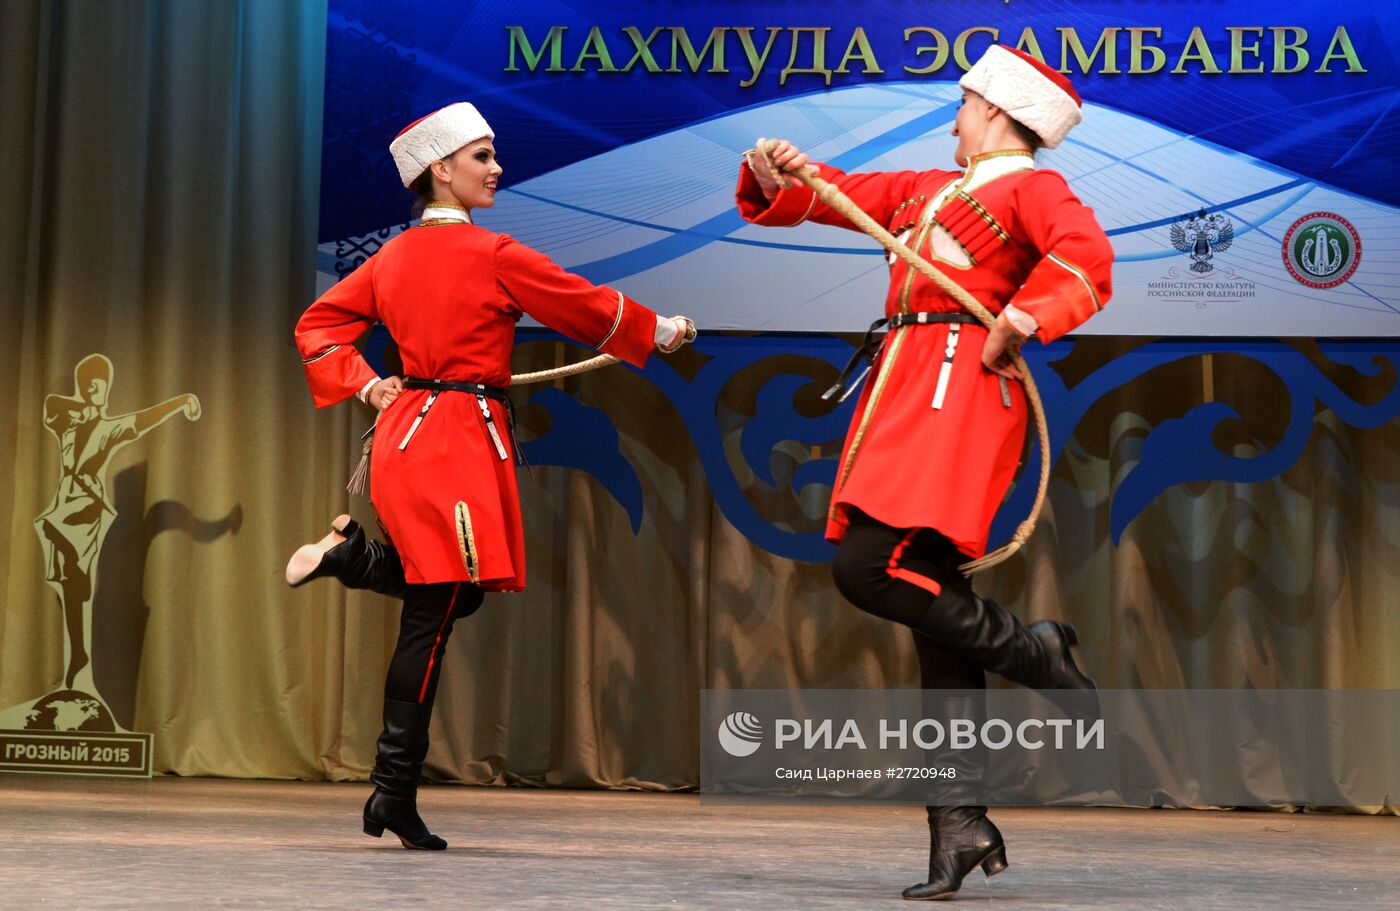 Фестиваль-конкурс сольного танца им. Махмуда Эсамбаева